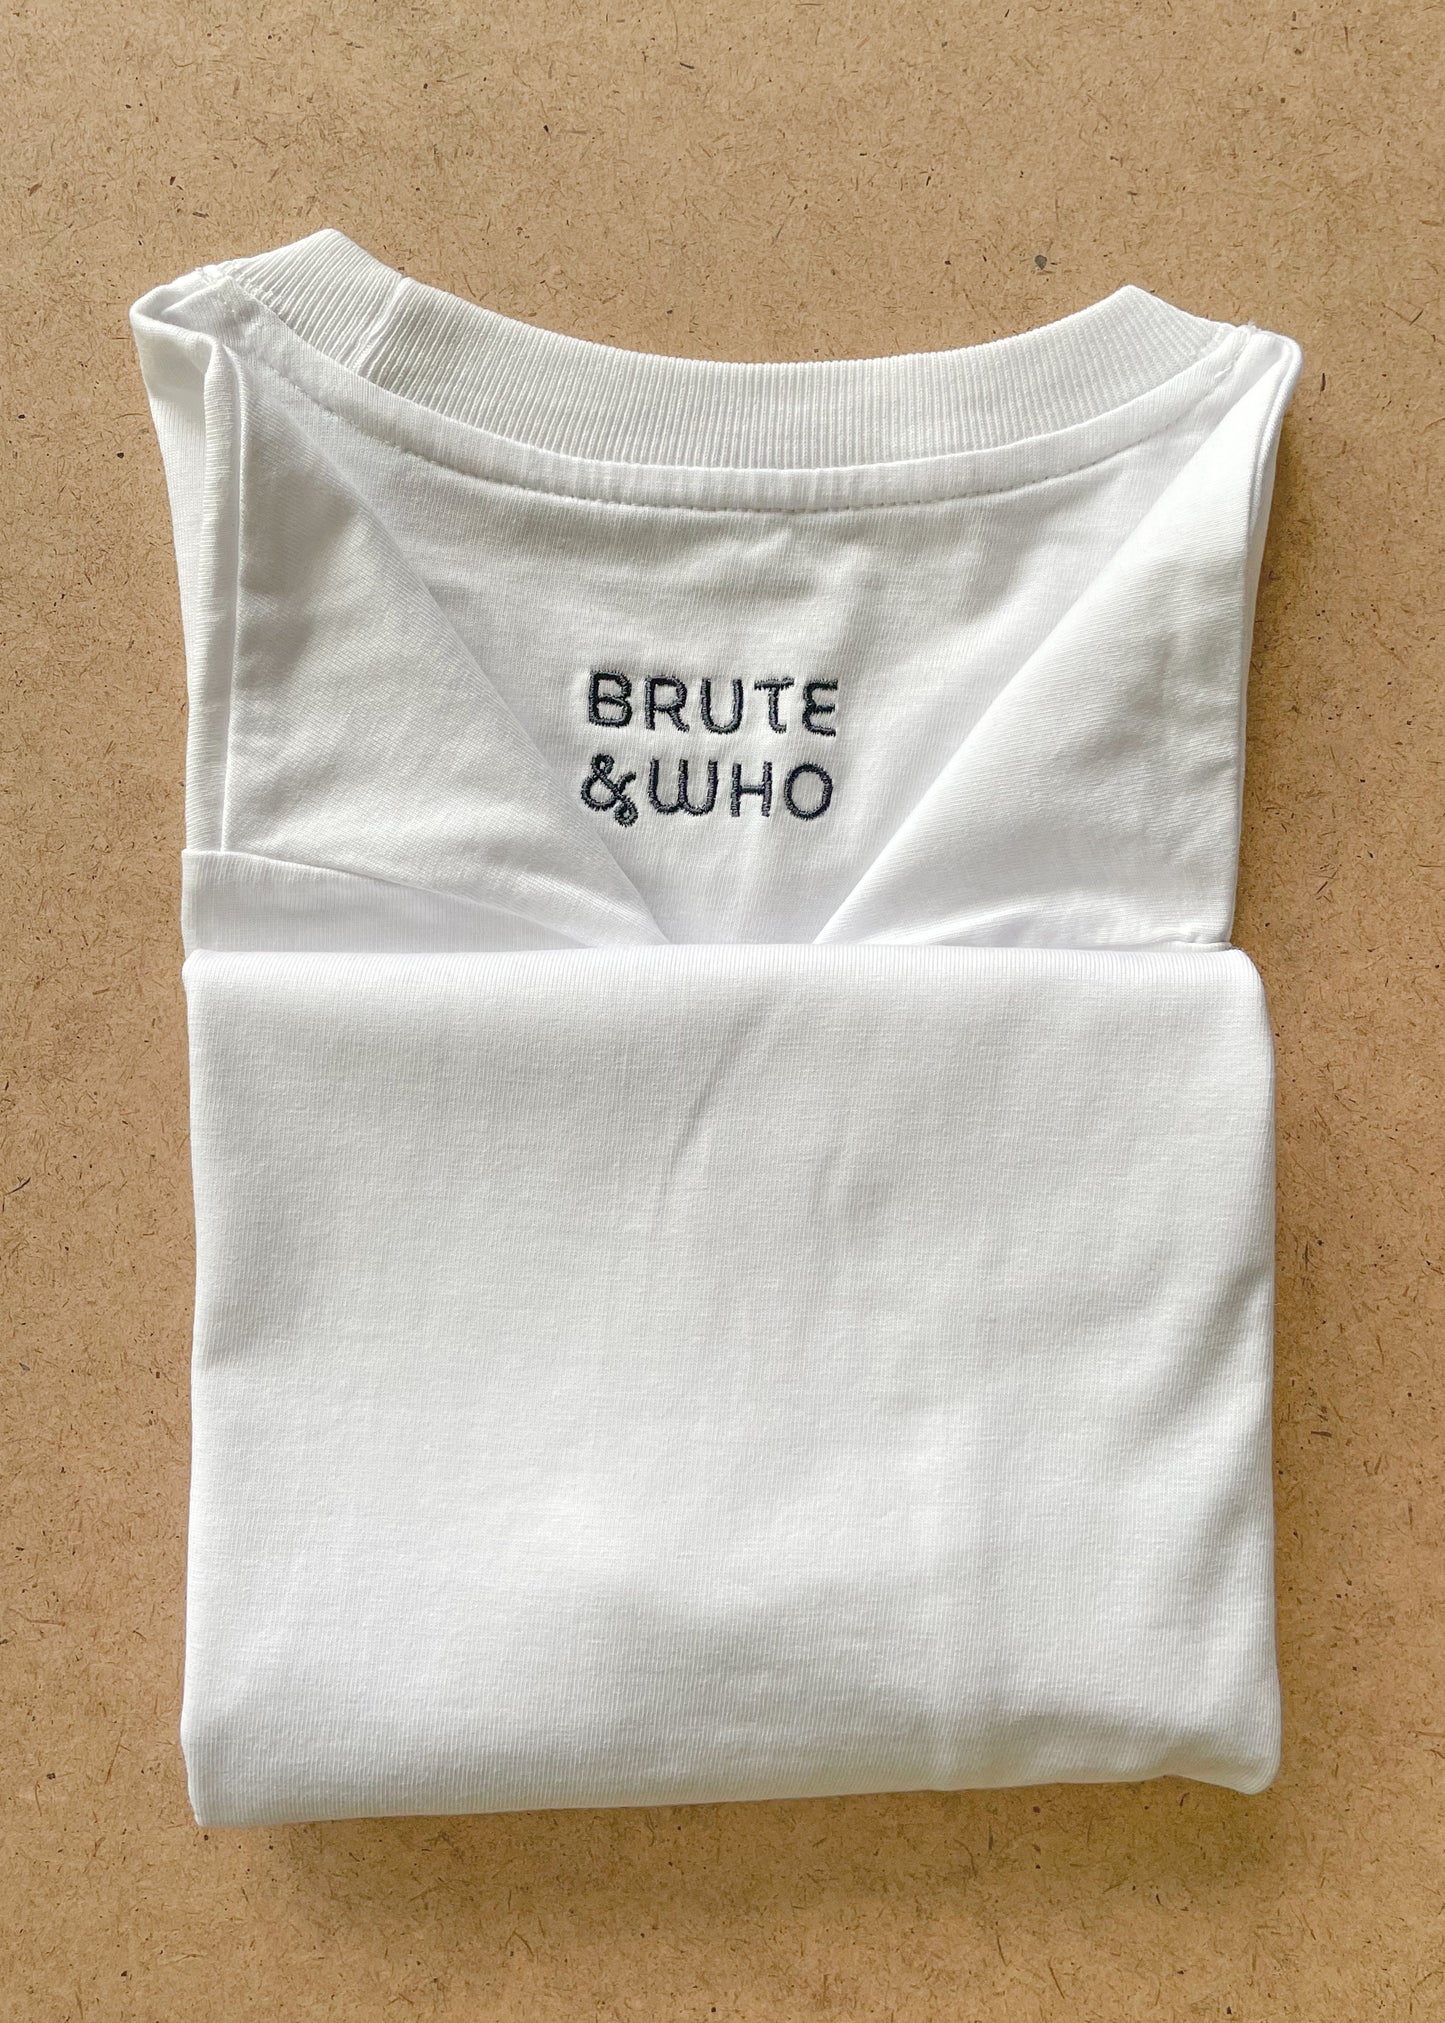 Brute&Doodle Unisex White T-shirt